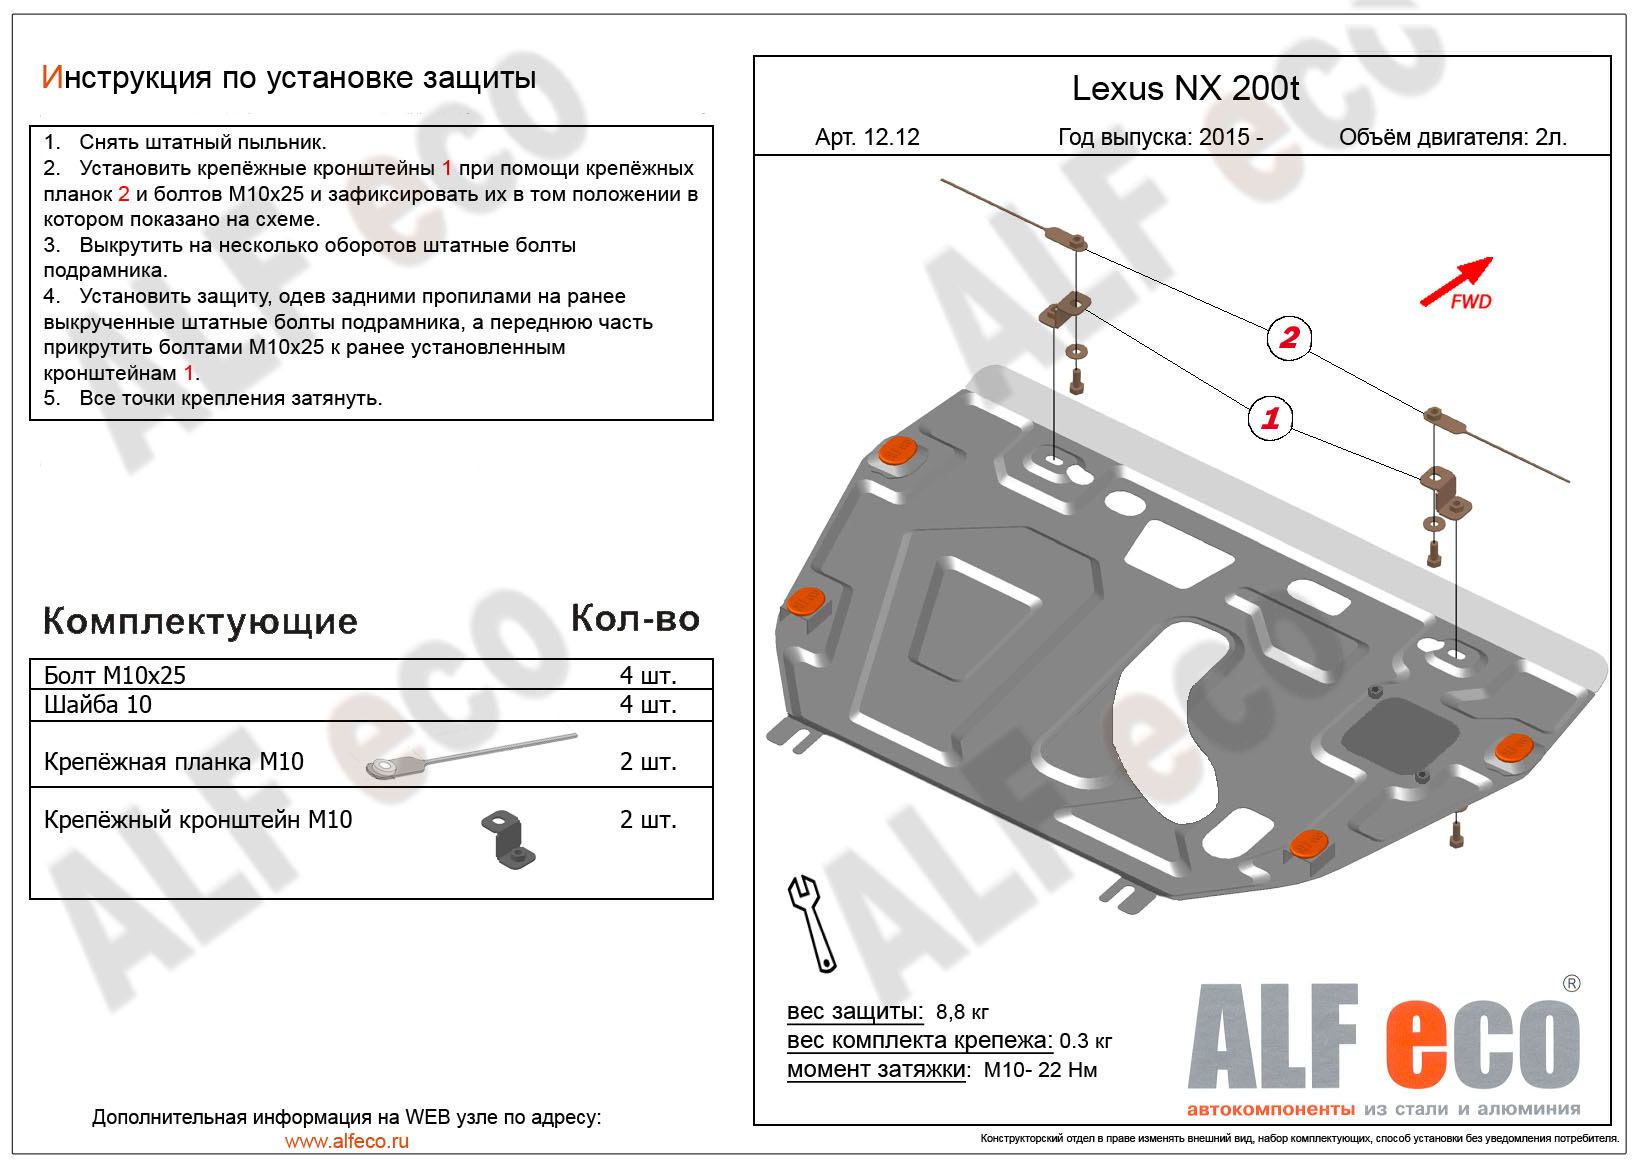 Lexus RX 200 t защита картера и КПП штамповка 2мм ALFeco